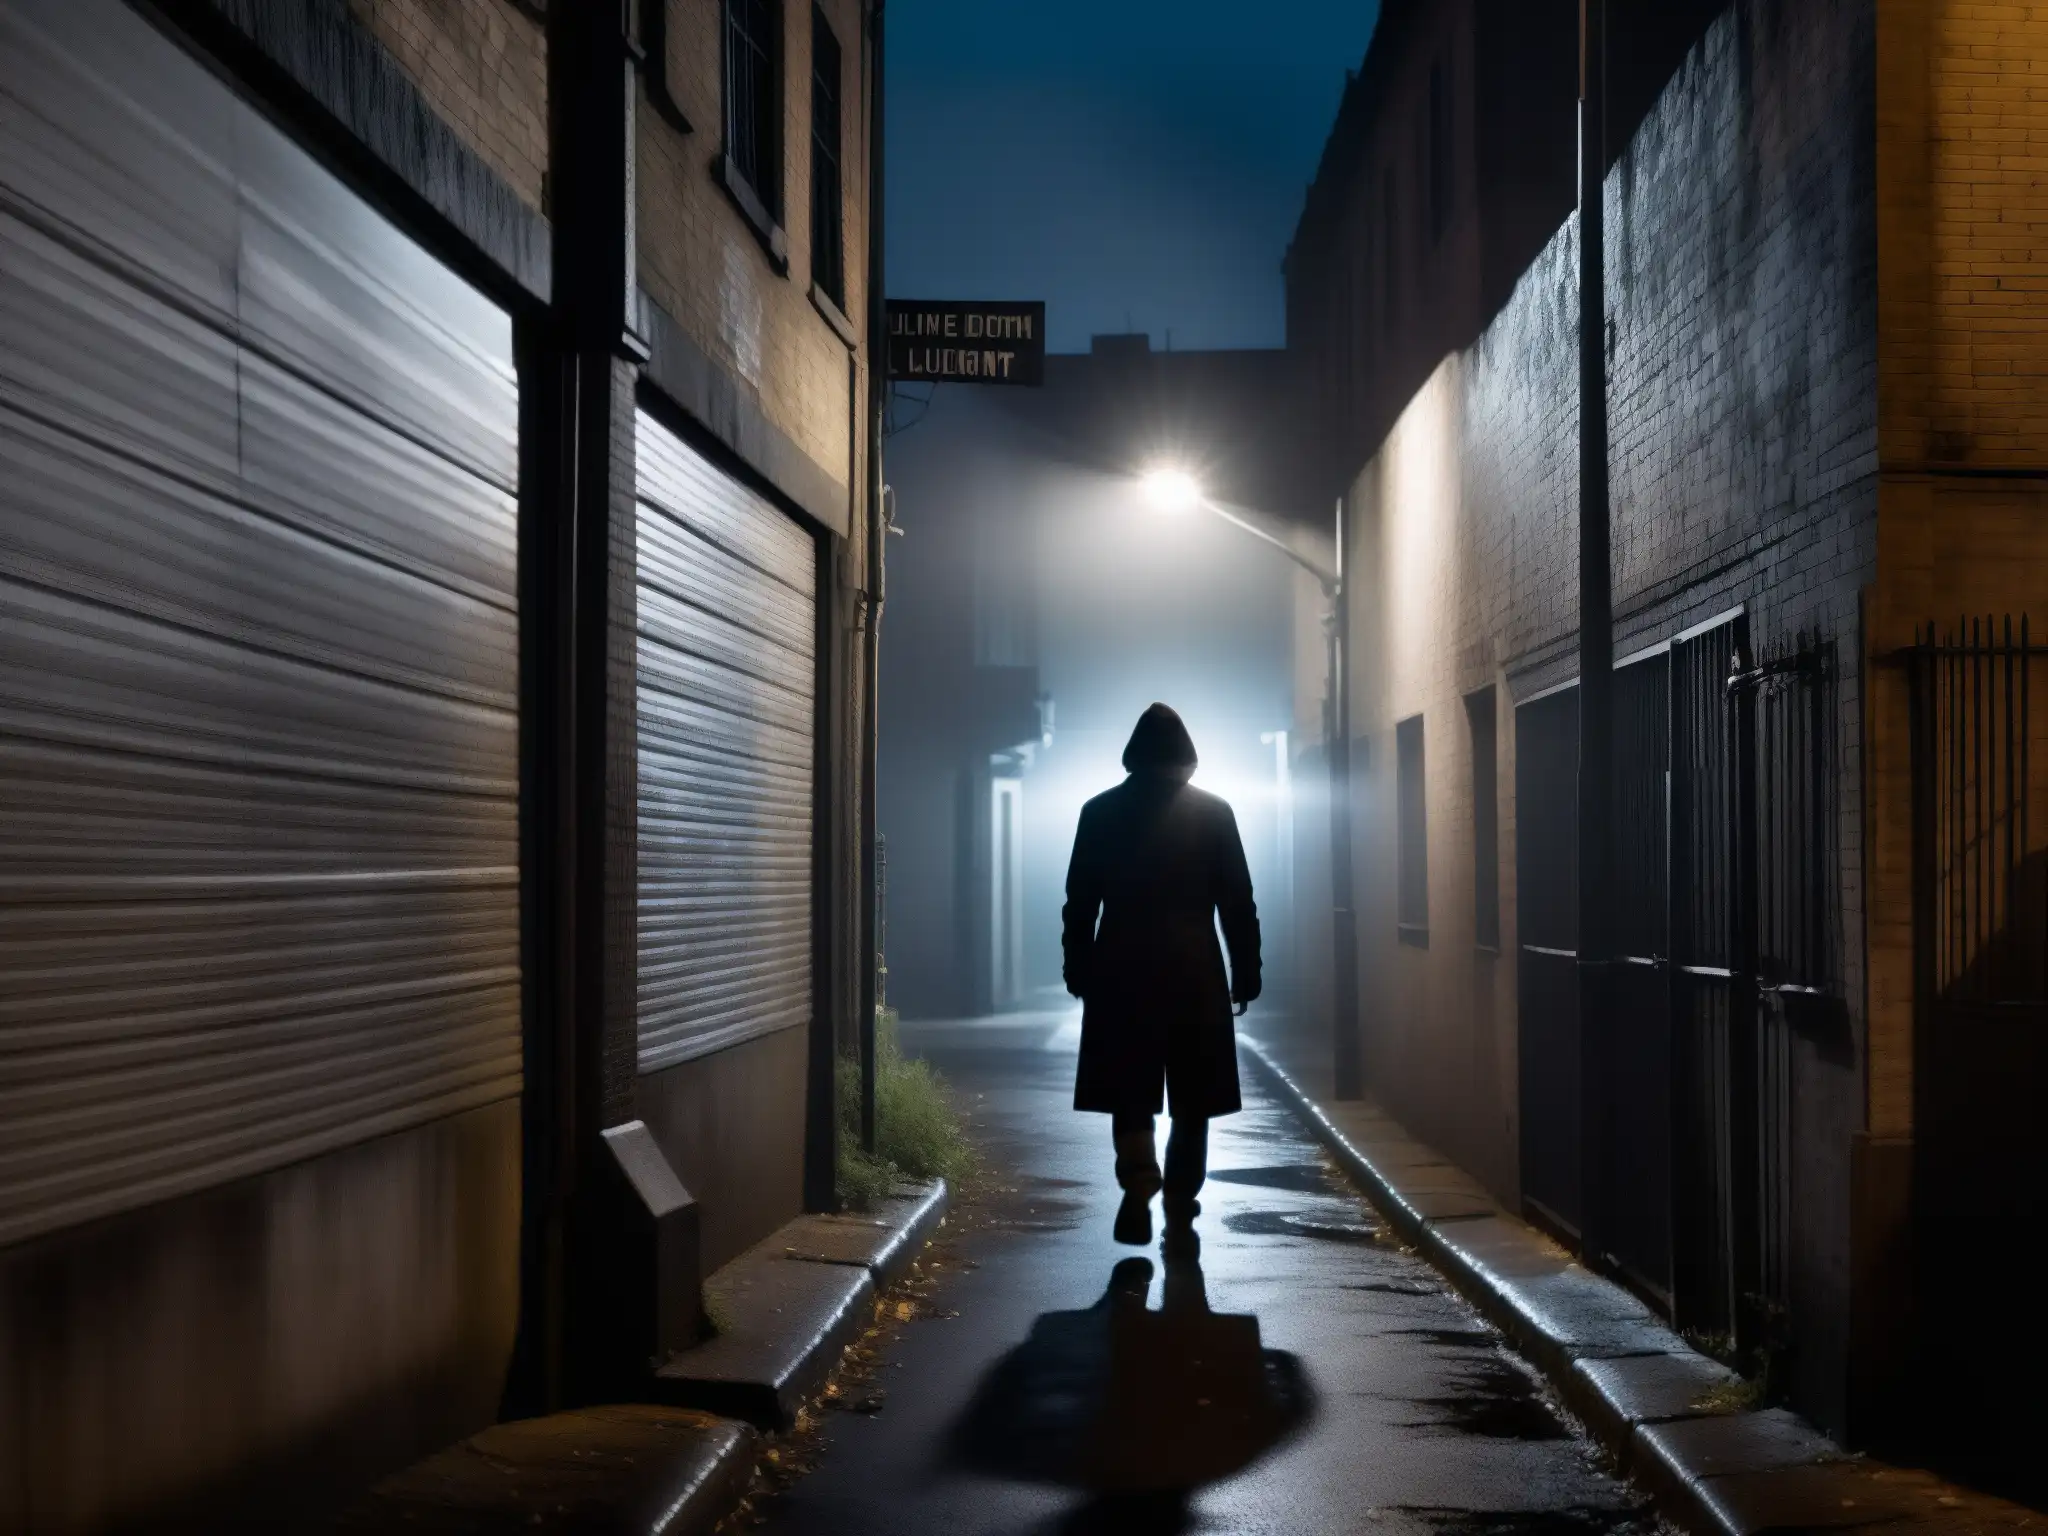 Alley oscura con farola solitaria, sombras inquietantes y figura en la distancia, función advertidora de leyendas urbanas